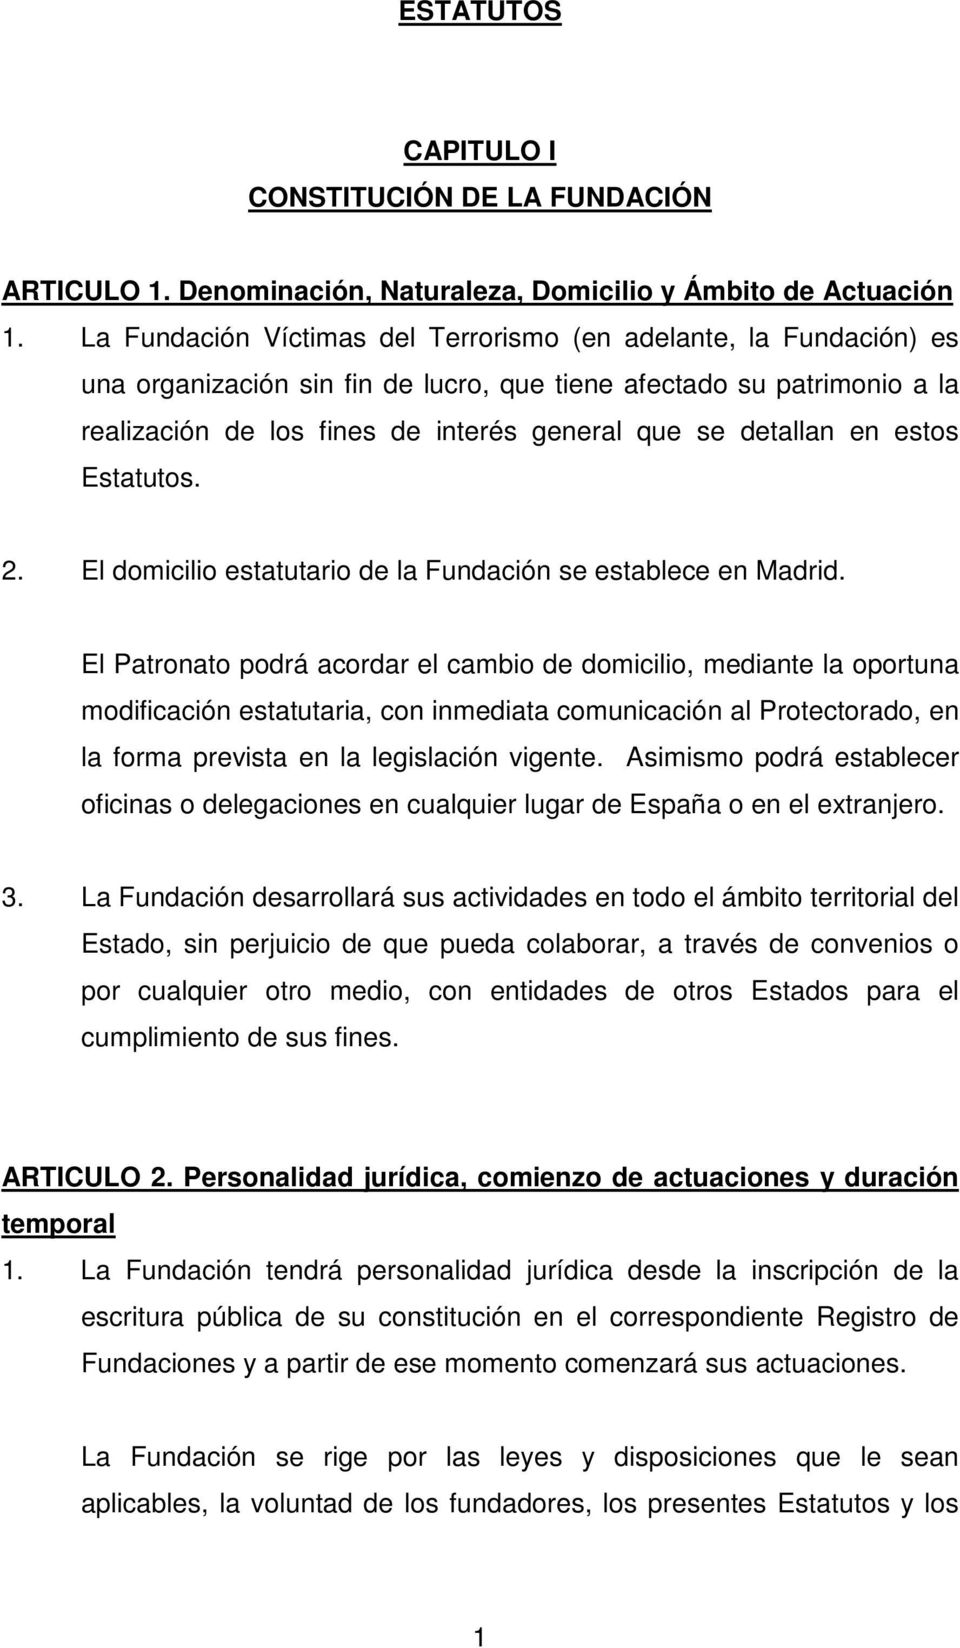 detallan en estos Estatutos. 2. El domicilio estatutario de la Fundación se establece en Madrid.